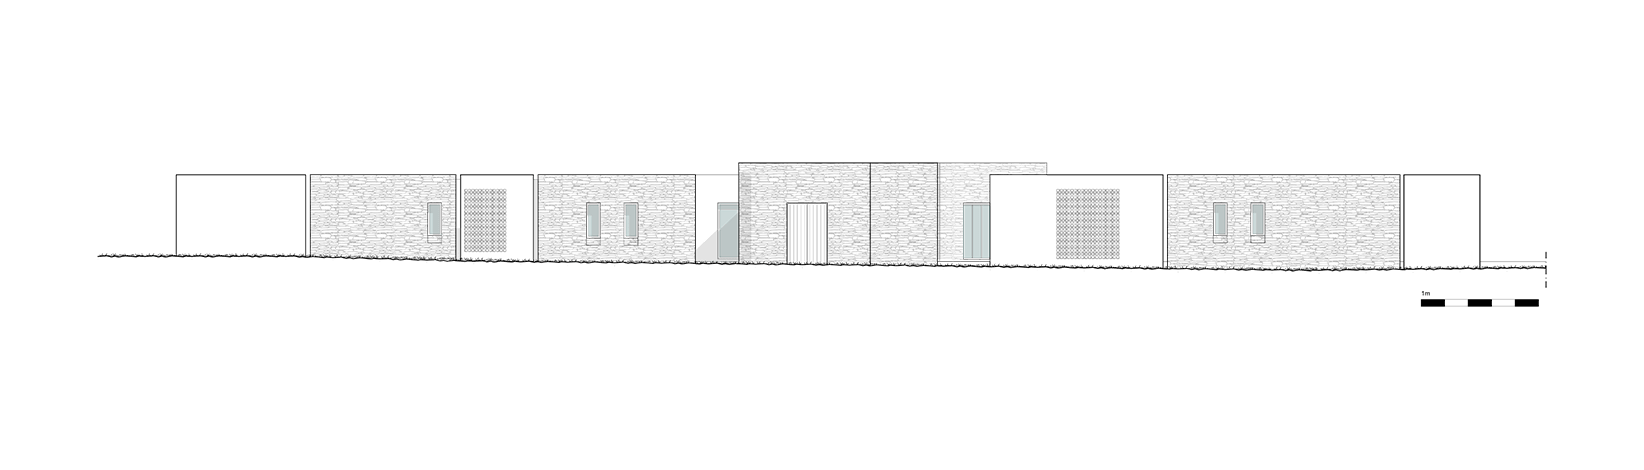 Evripiotis Architects-dashed-house-paros-evripiotis-architects-elevation02-new2-Dashed House, Paros Island